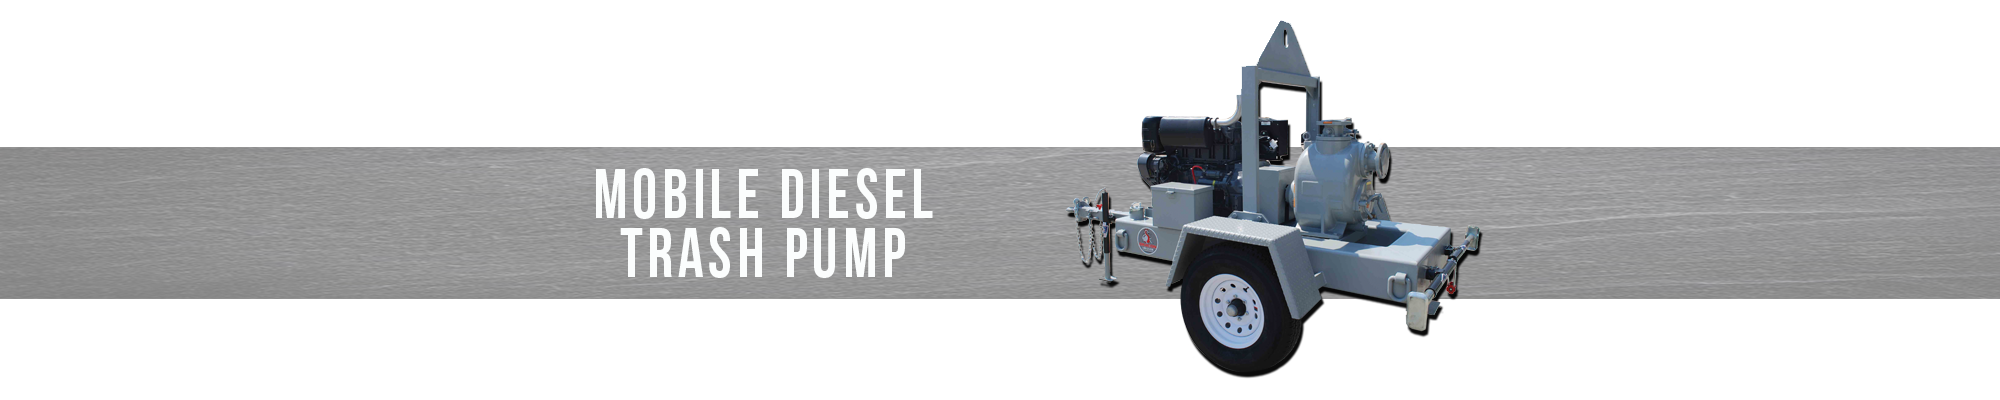 Mobile Diesel Trash Pump